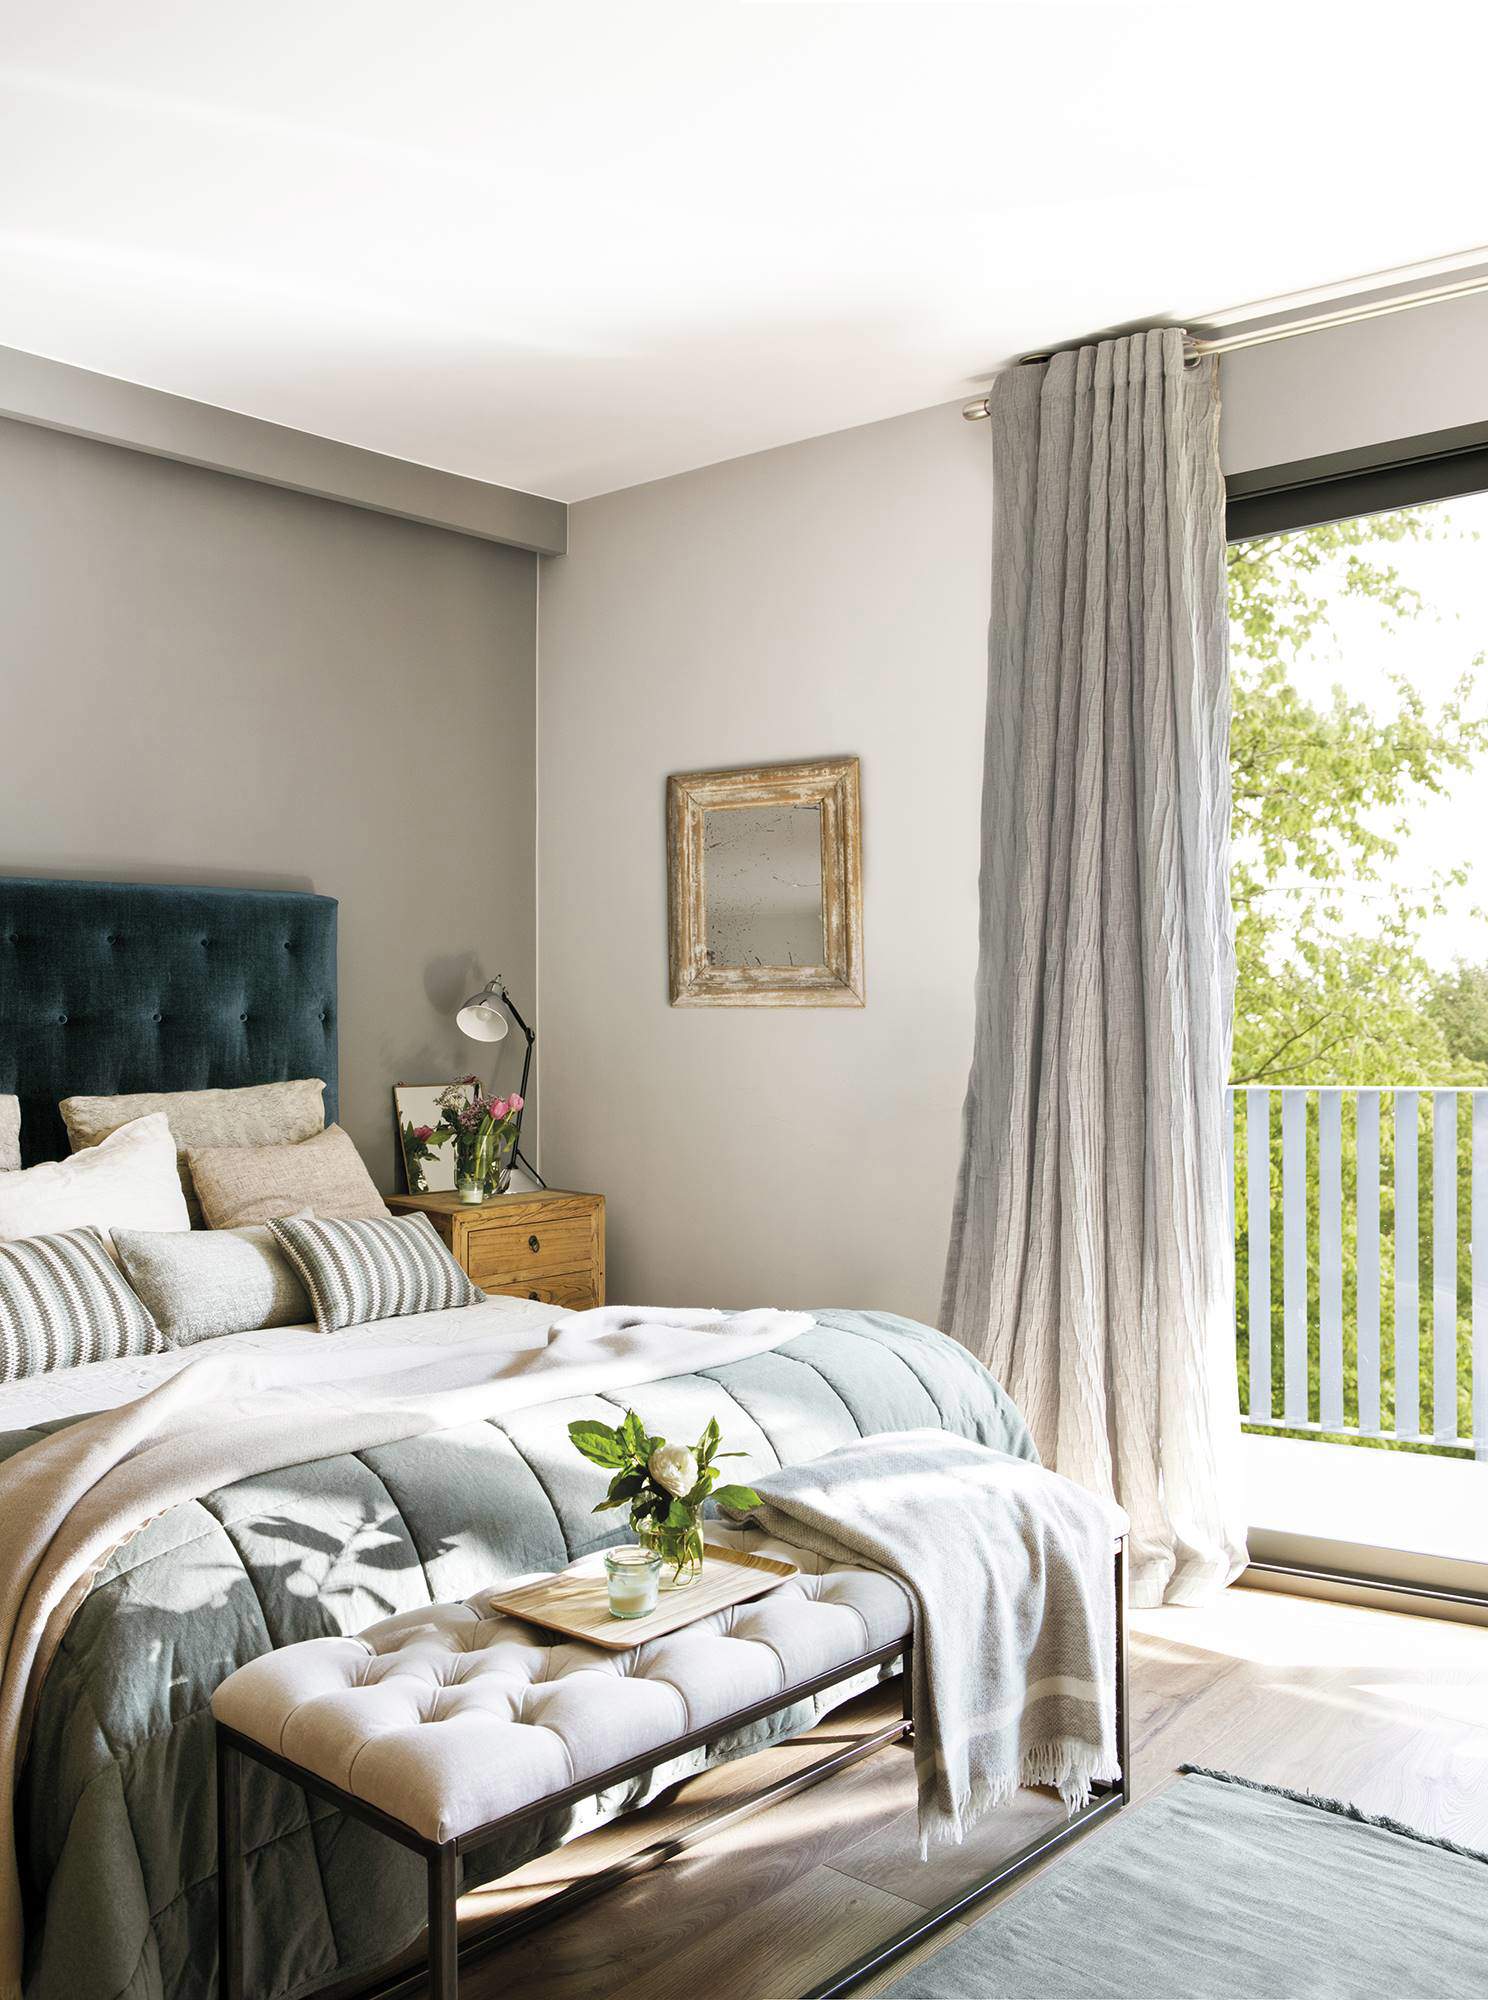 Las cortinas opacas son la mejor solución para que no entre luz en el dormitorio y puedas dormir plácidamente